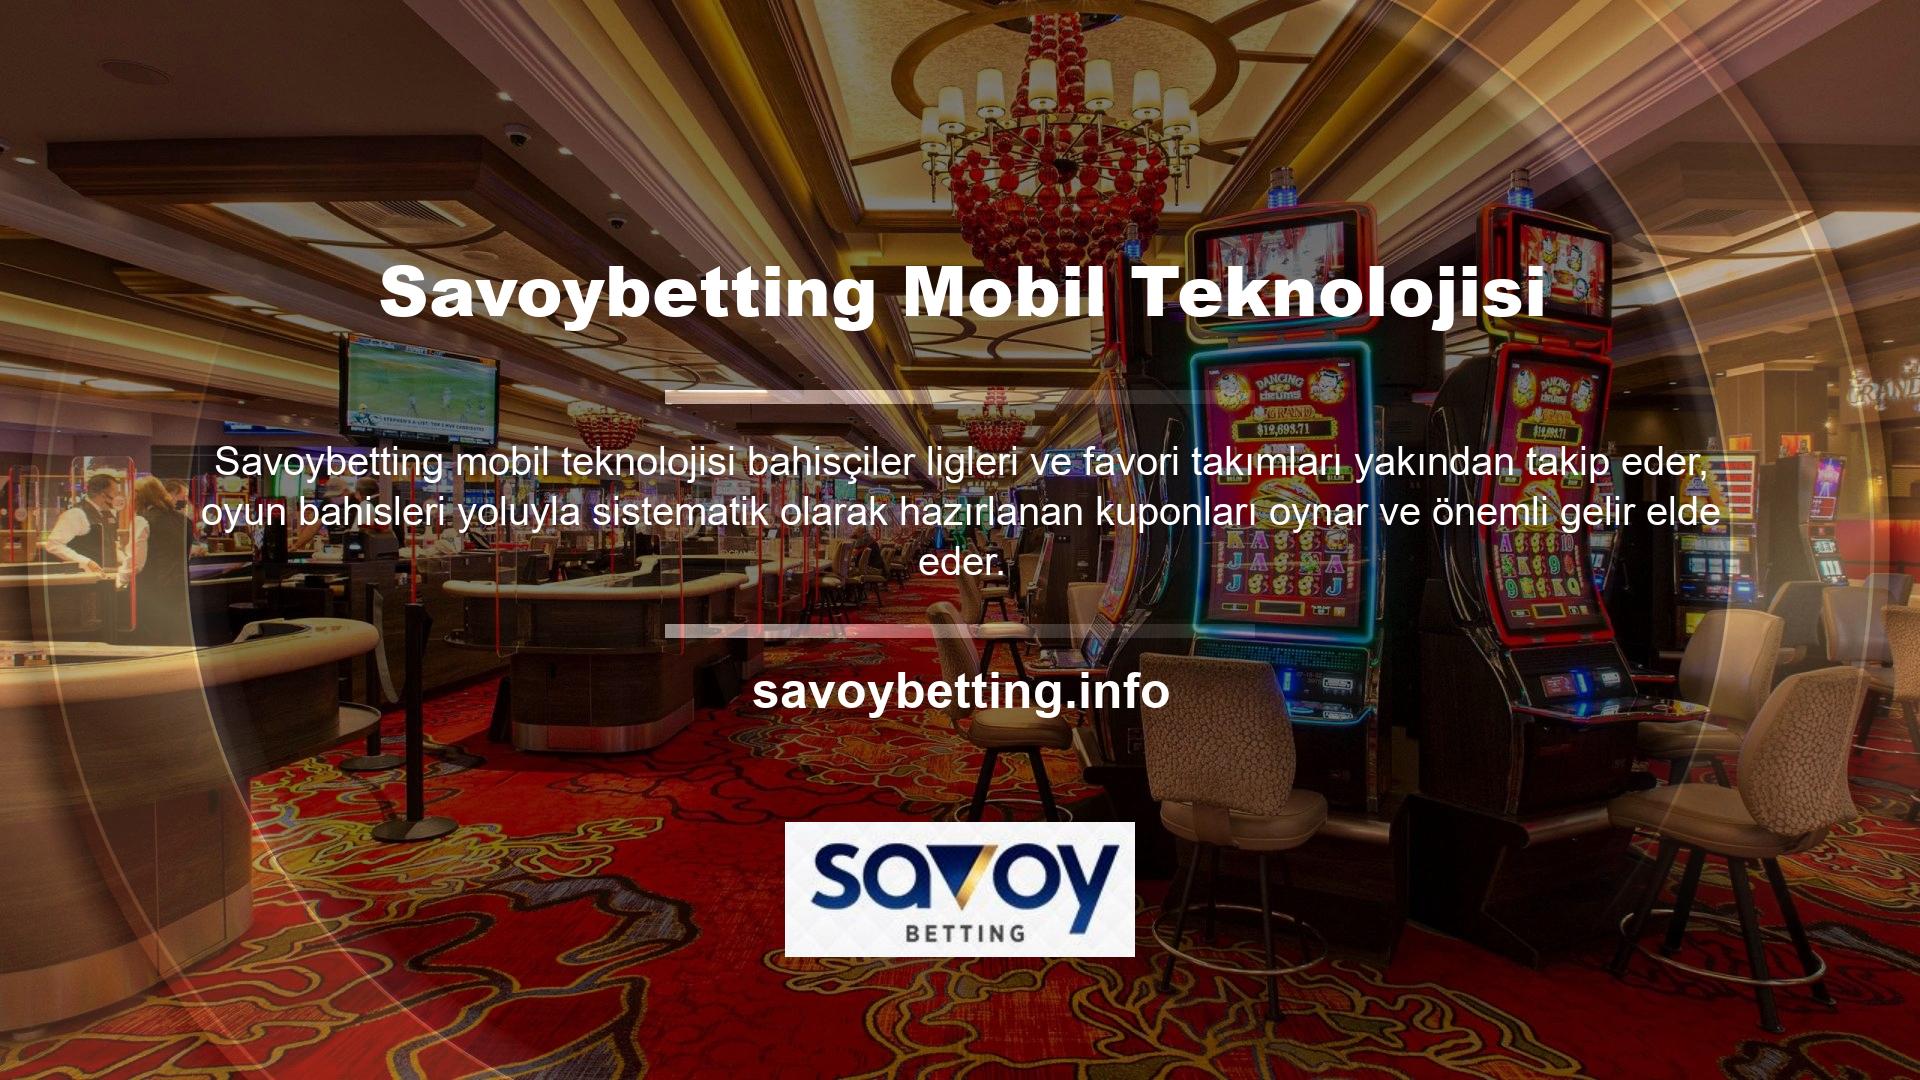 Savoybetting Mobil İndir ile telefonunuza yüklenen bir uygulama, bayilerde veya bilgisayarlarda vakit kaybetmeden alternatif bir çözüm sunuyor